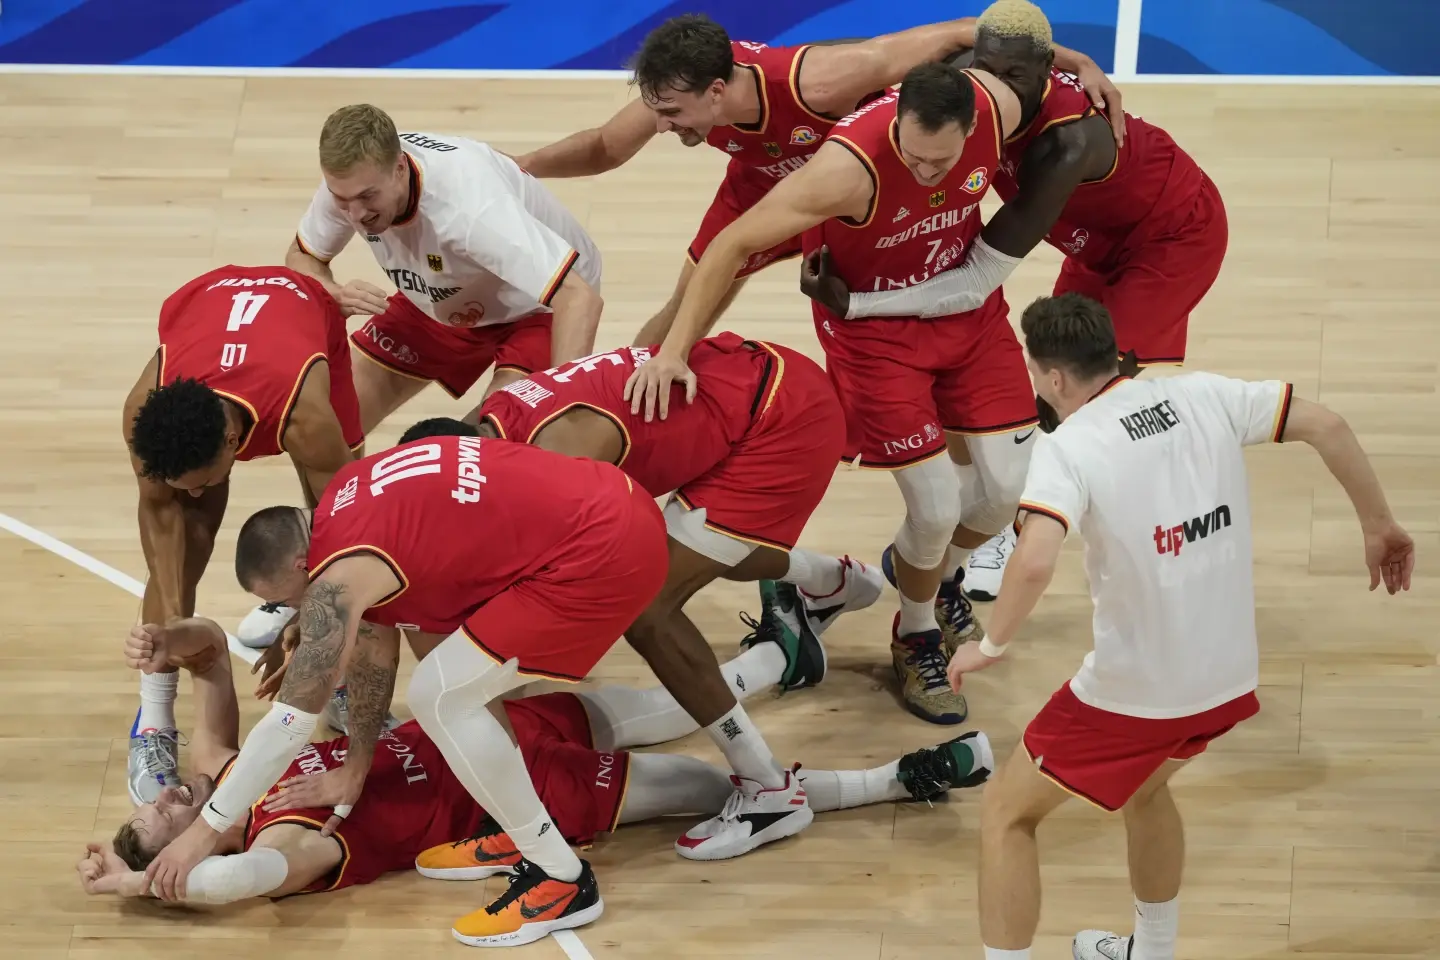 No habrá oro para Estados Unidos en el Mundial de baloncesto, tras perder ante Alemania